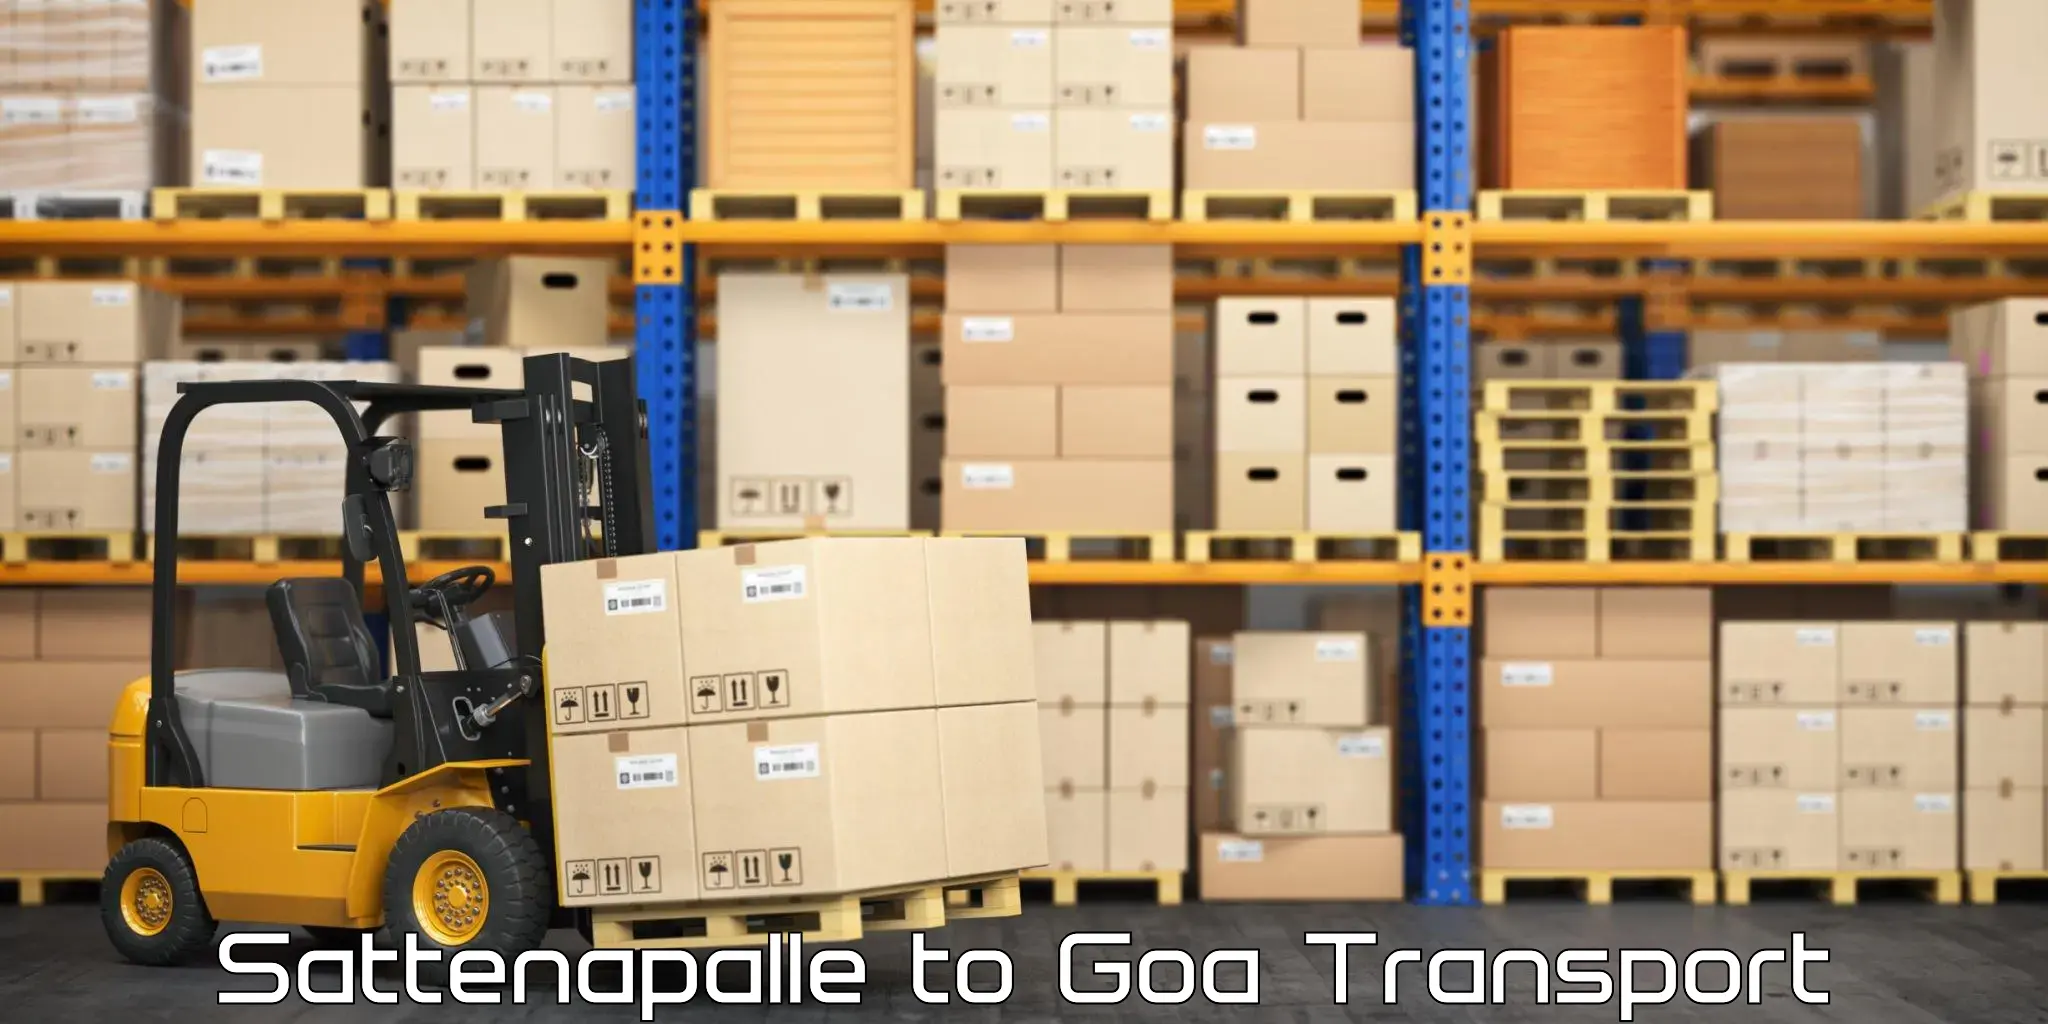 Shipping partner Sattenapalle to IIT Goa